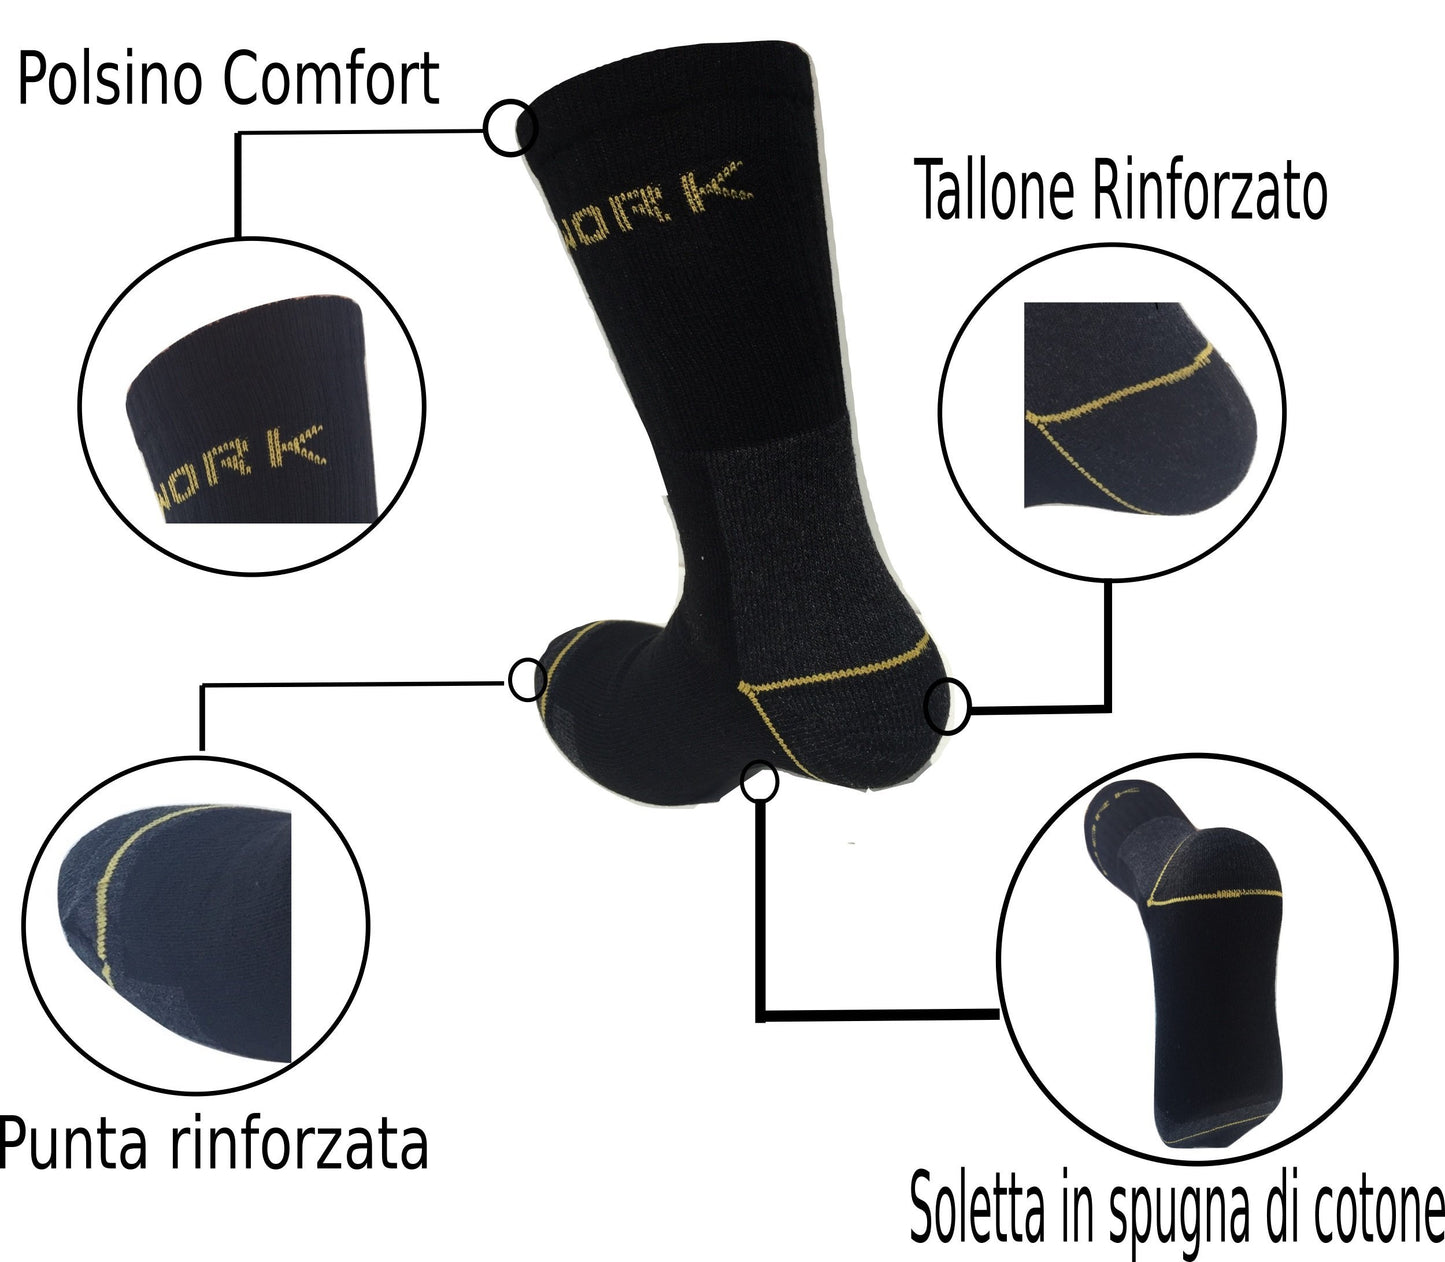 Lucchetti Socks Milano Calze da Lavoro Uomo in Spugna di Cotone Rinforzate Antinfortunistiche Nero o Assortito